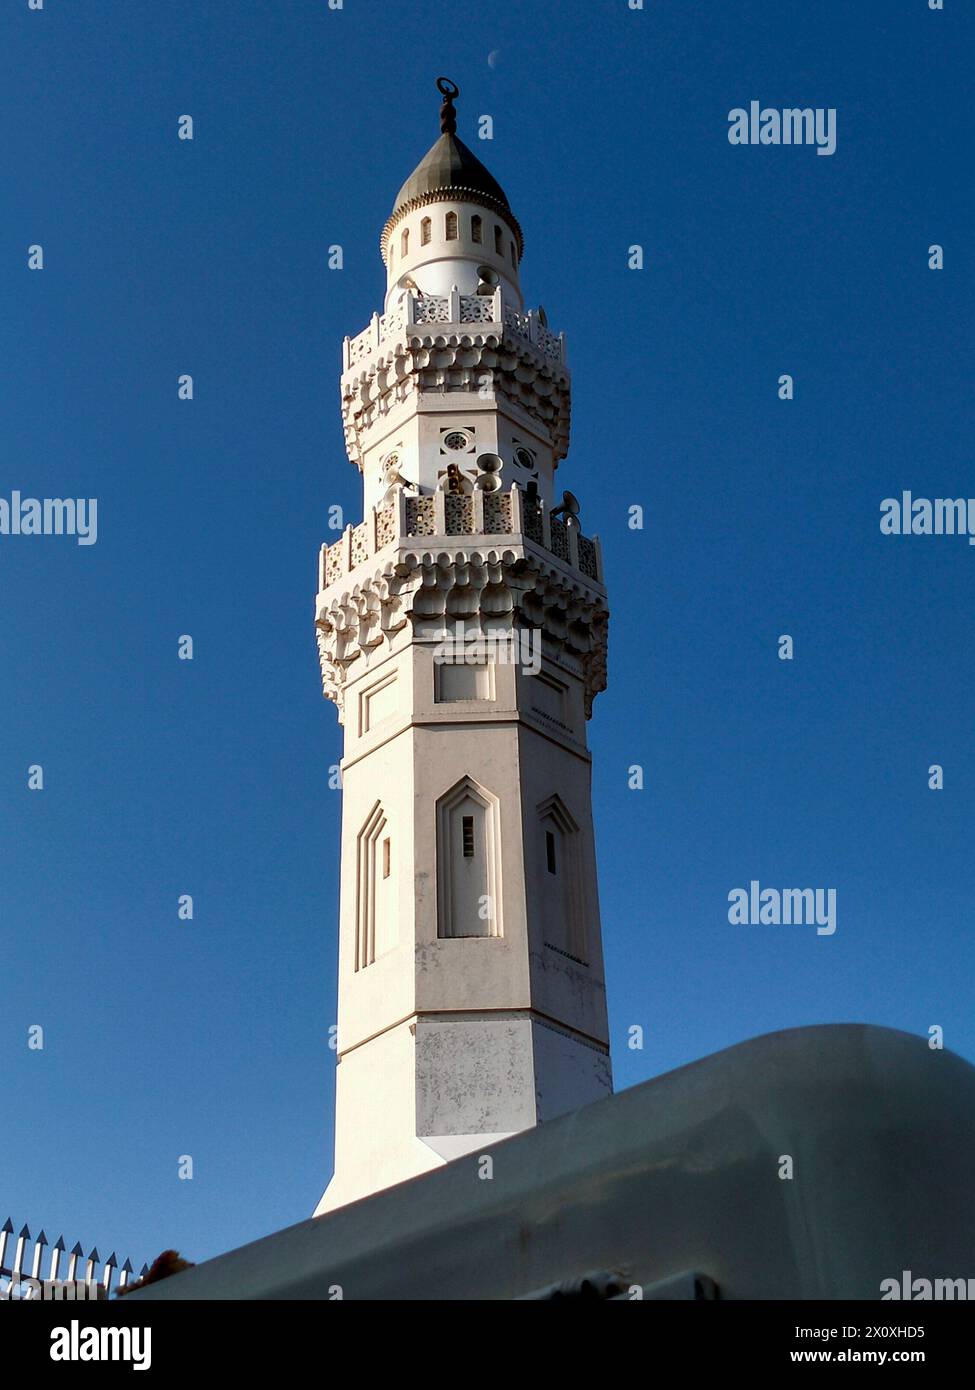 Moscheeturm in Medina, Saudi-Arabien mit blauem Himmel Hintergrund Stockfoto